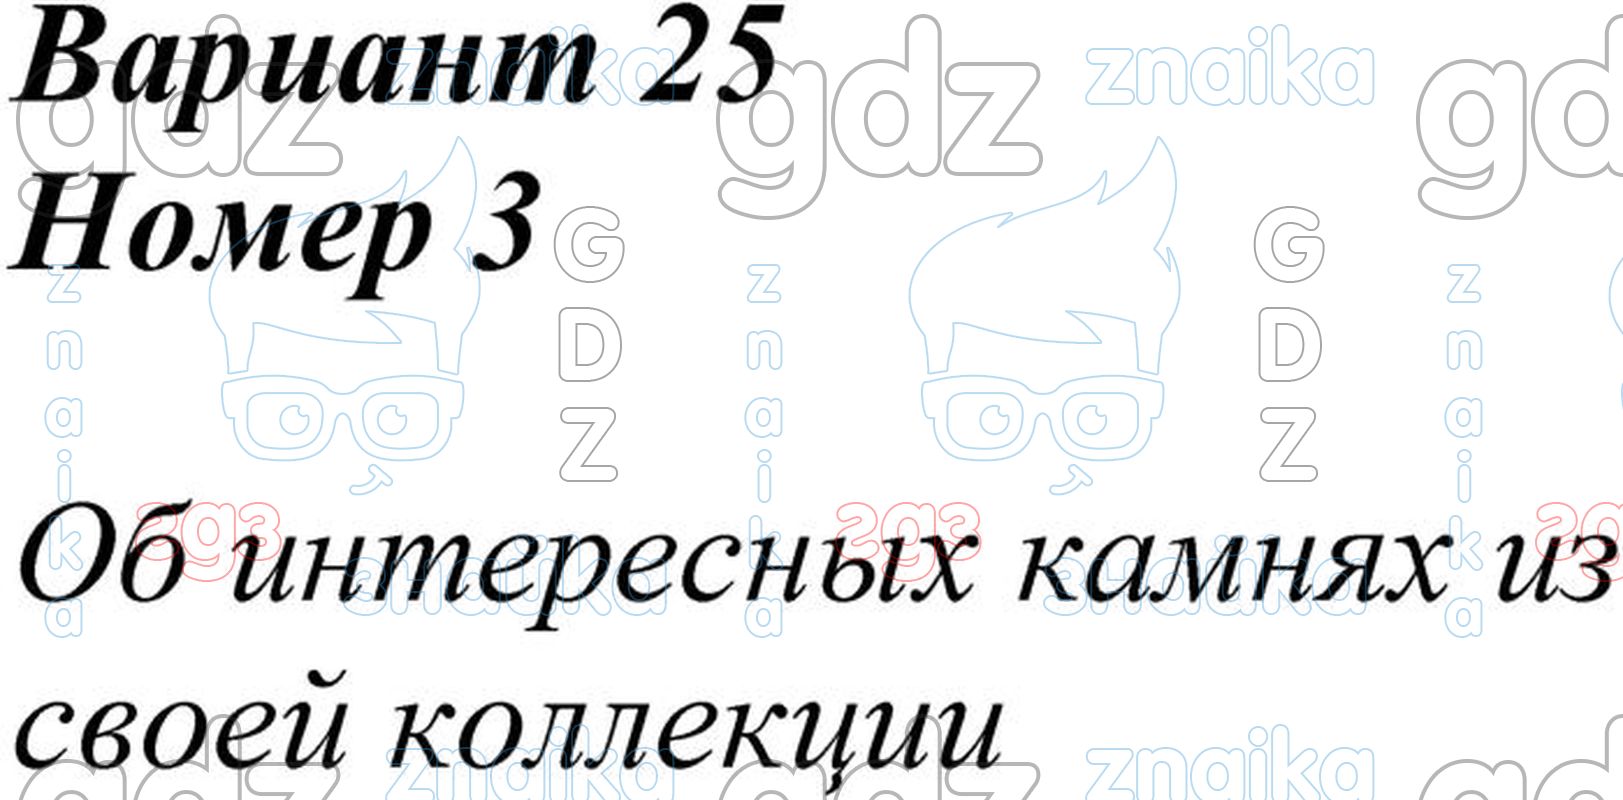 Работа с текстом 2 вариант 25. Чтение работа с текстом 3 класс Крылова ответы вариант 1.